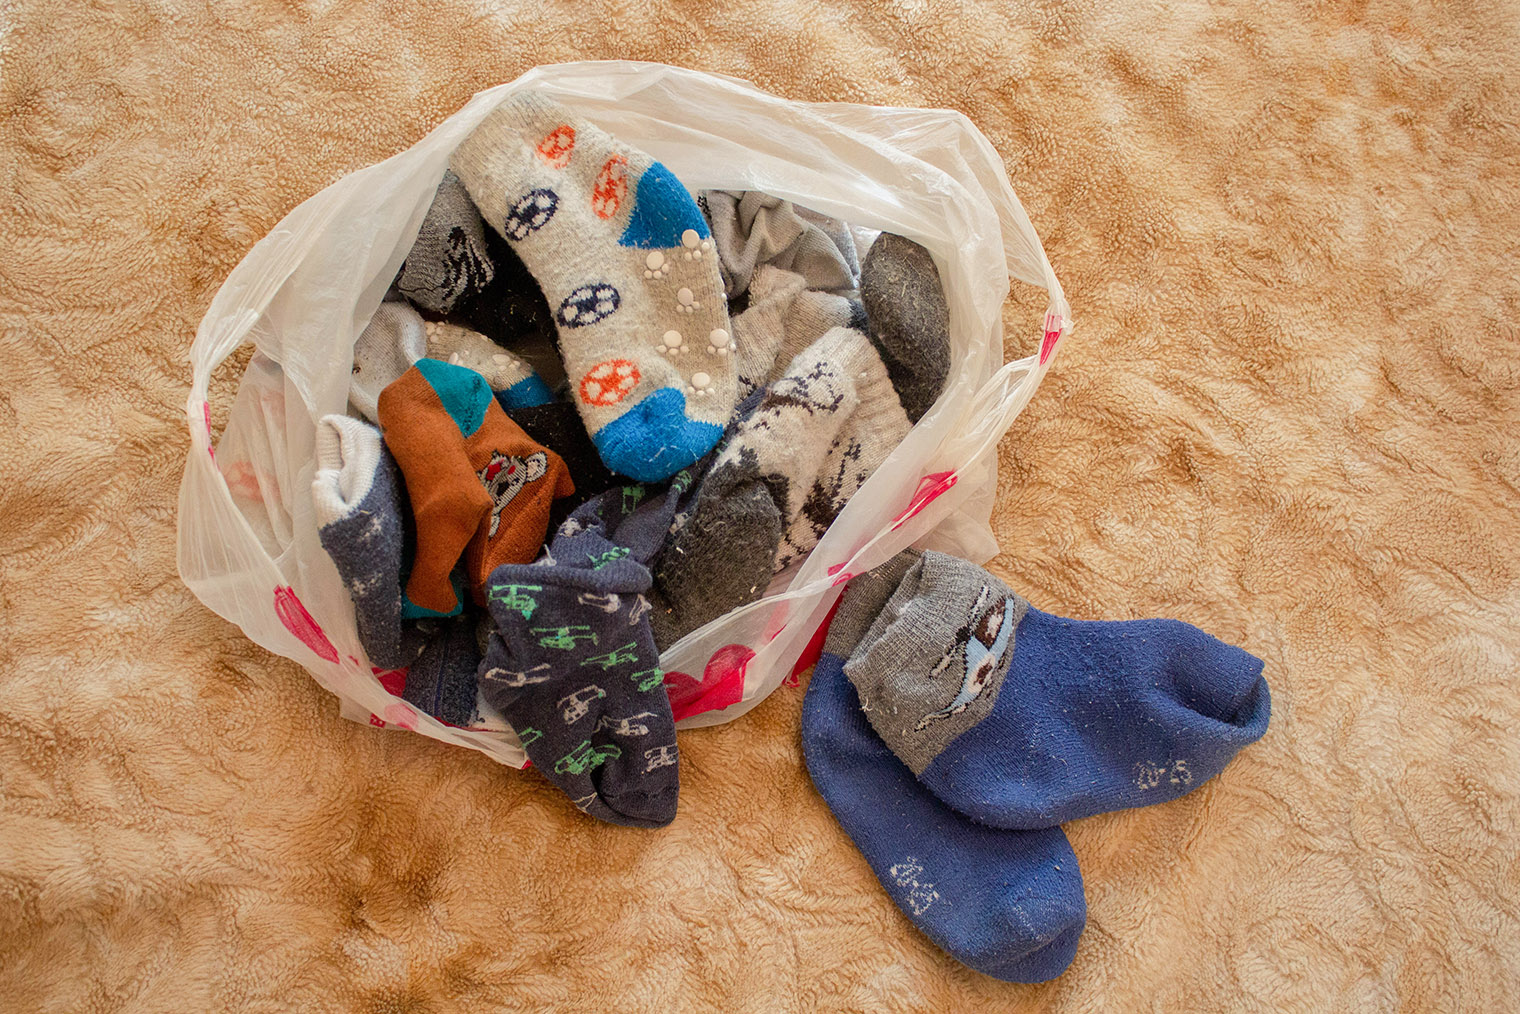 Можно дать старым носкам новую жизнь — превратить их в игрушки